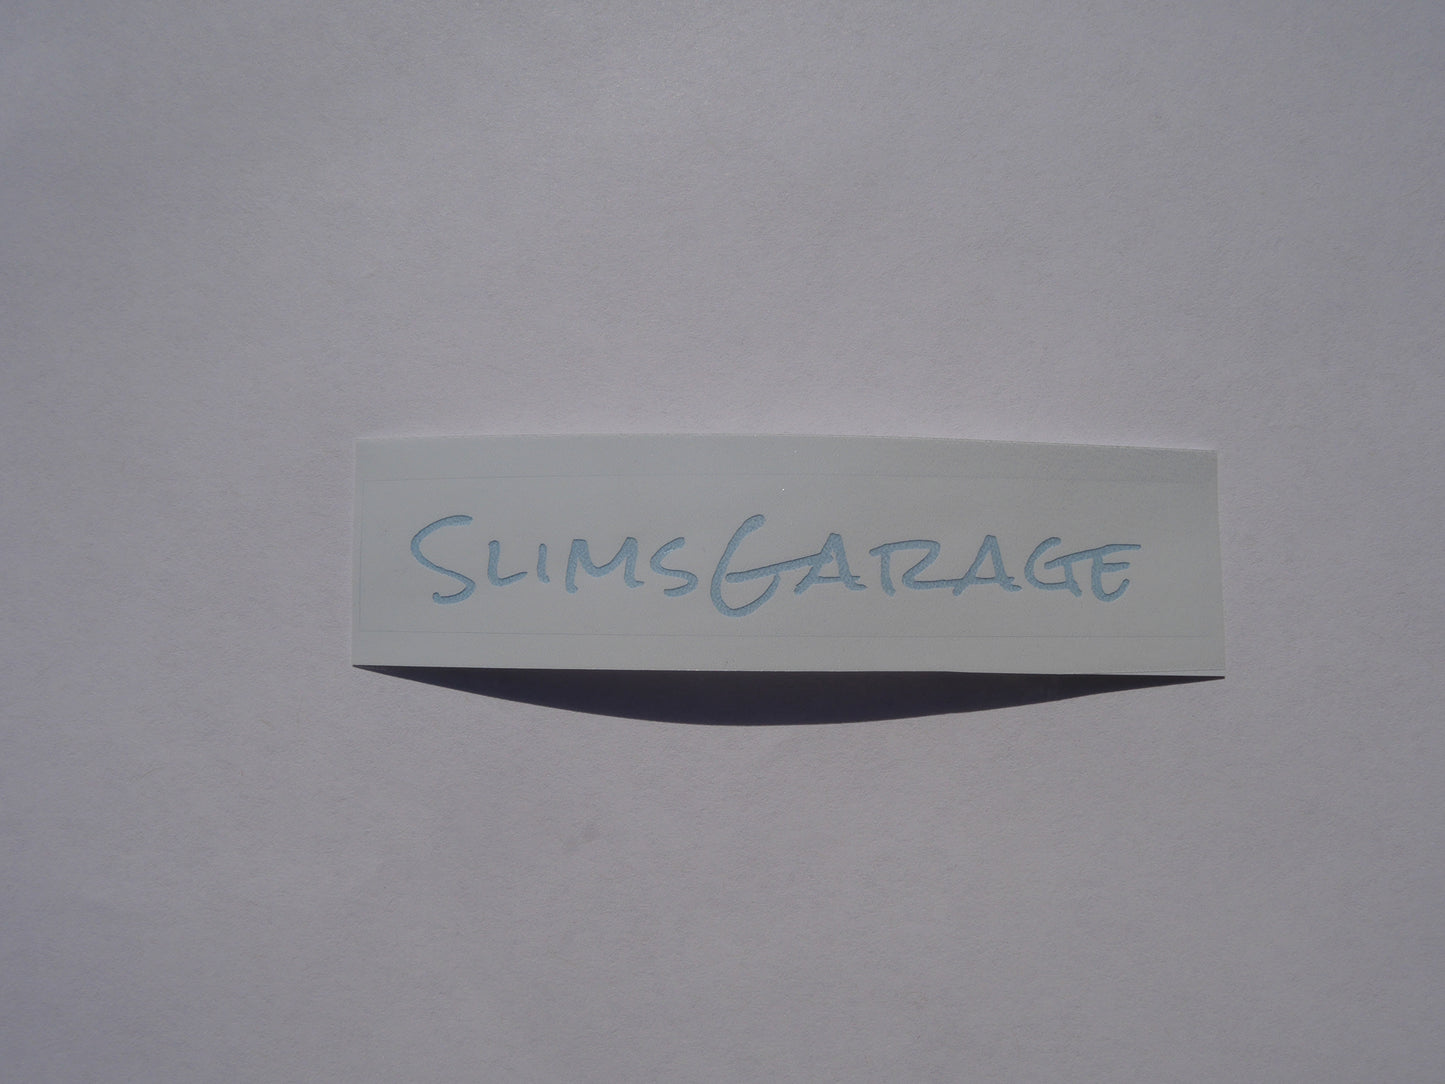 Slimsgarage Sticker